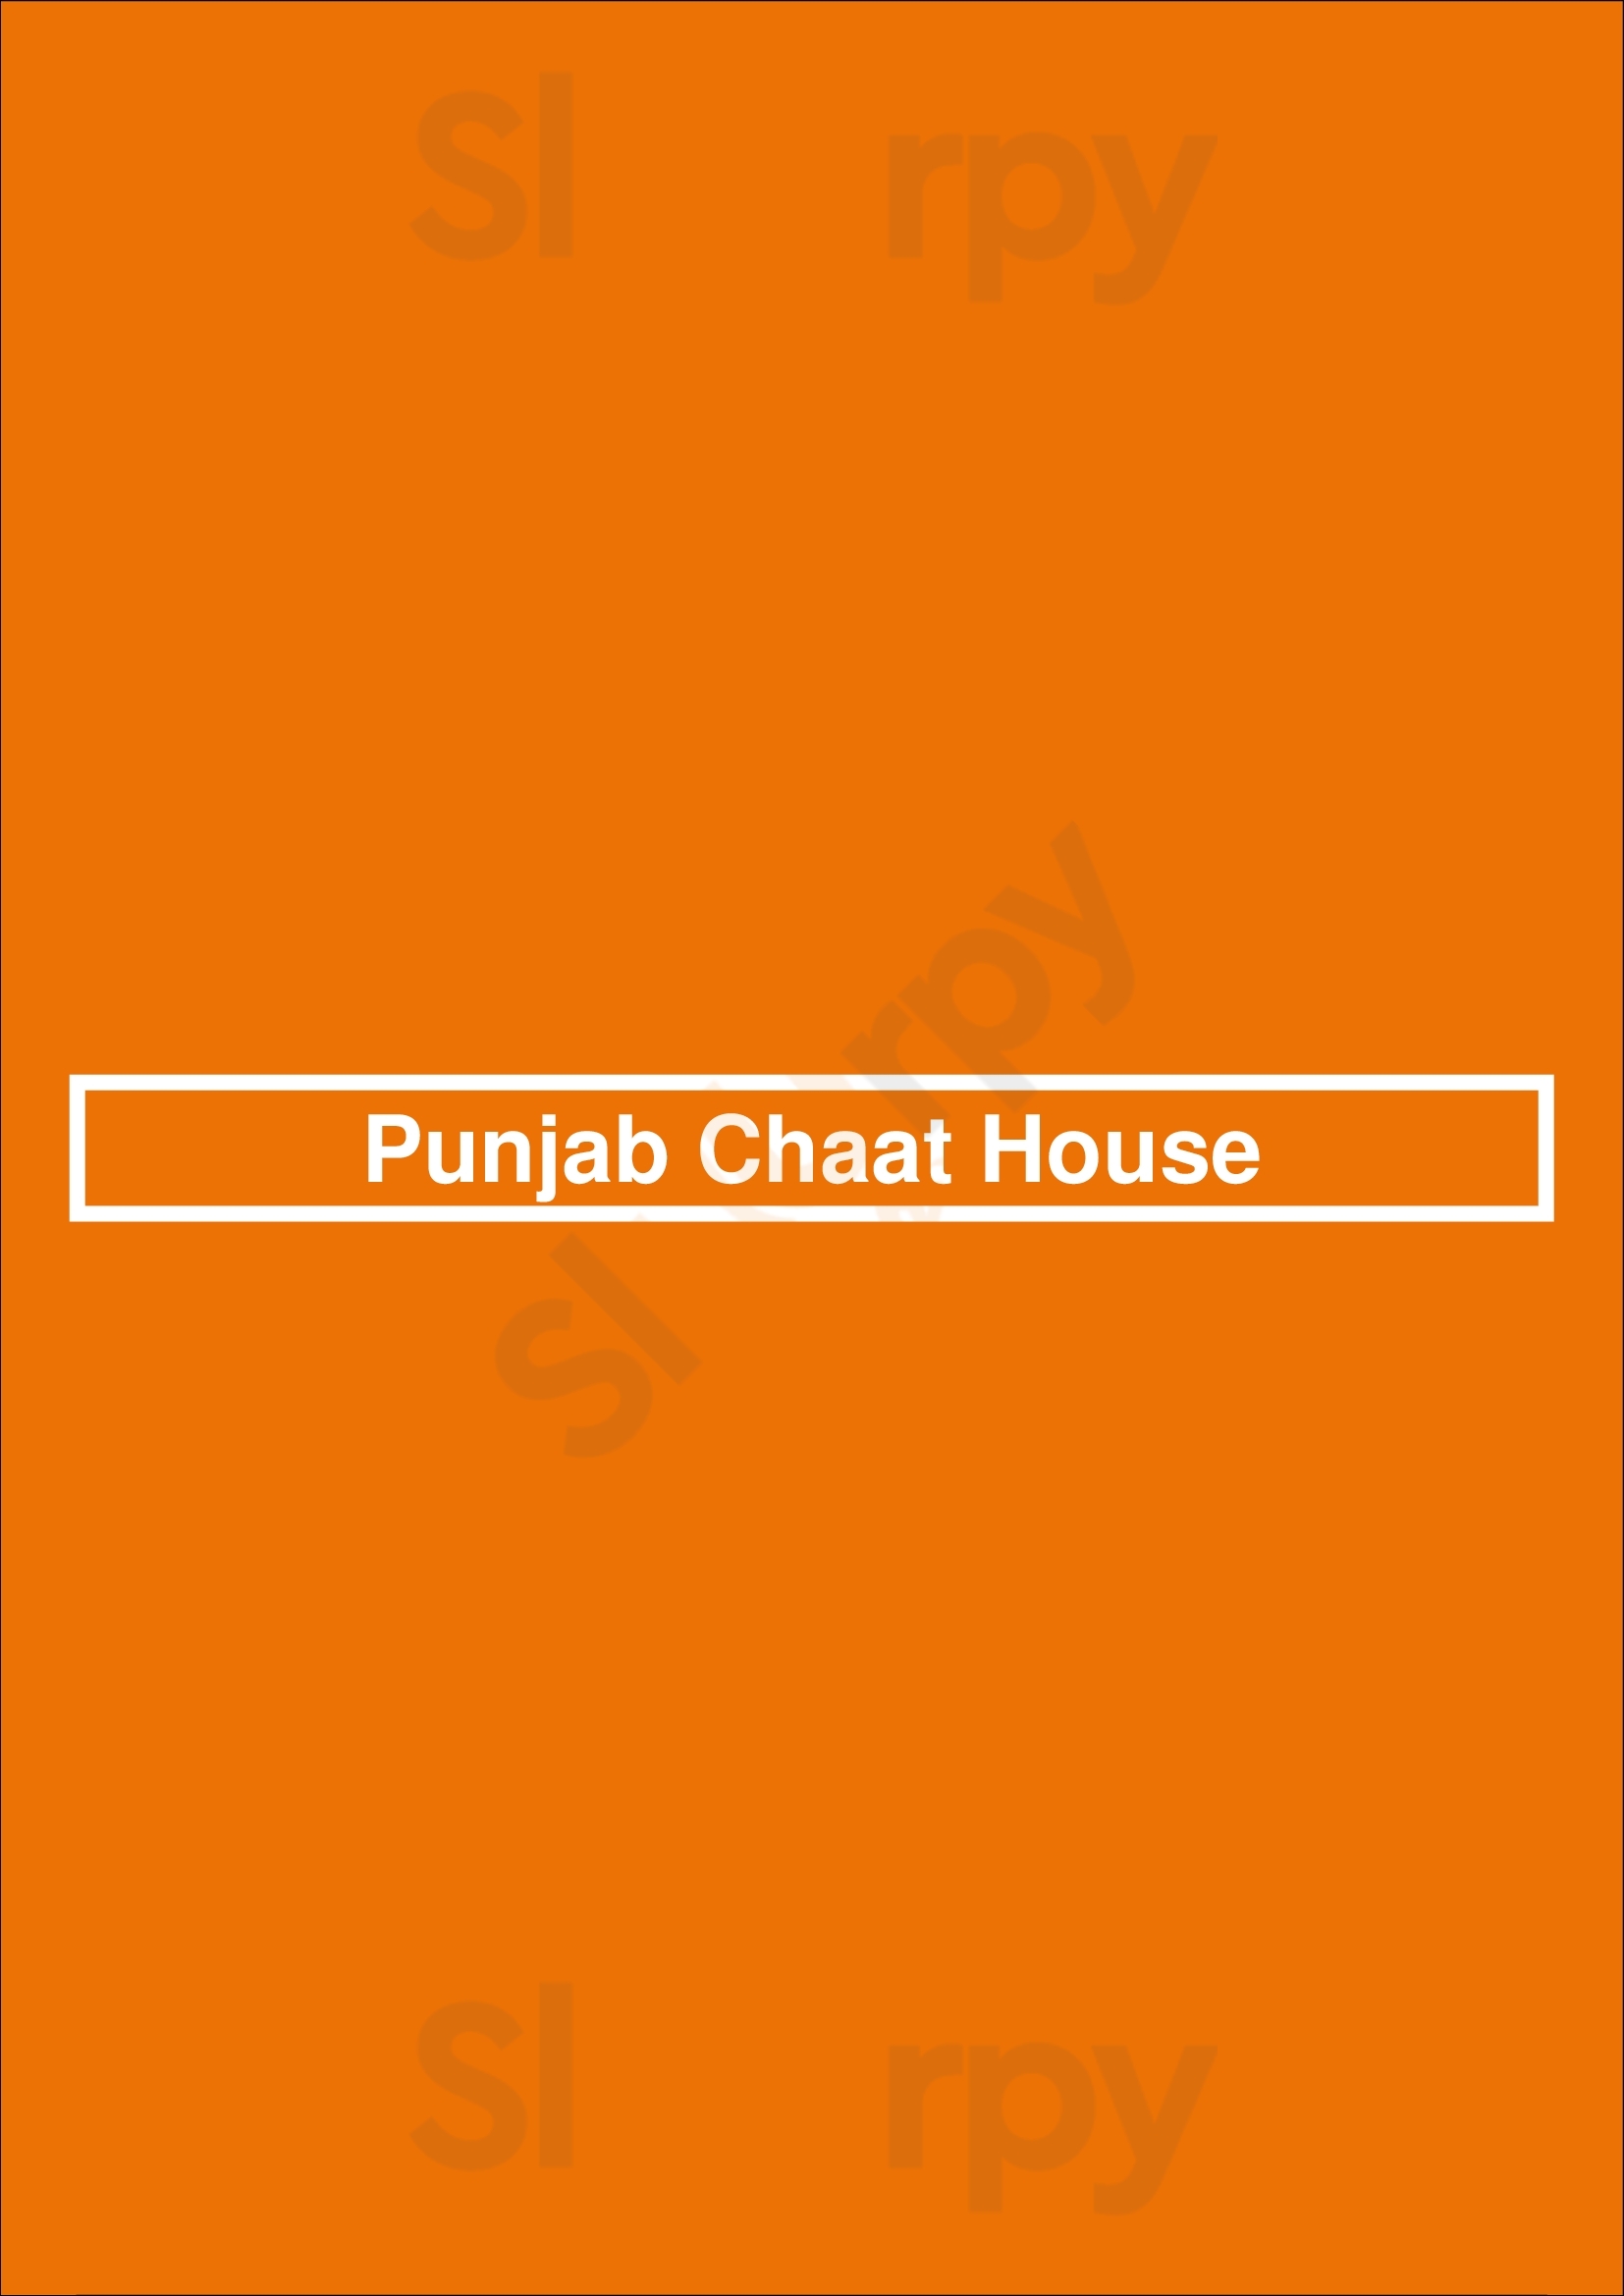 Punjab Chaat House Edmonton Menu - 1